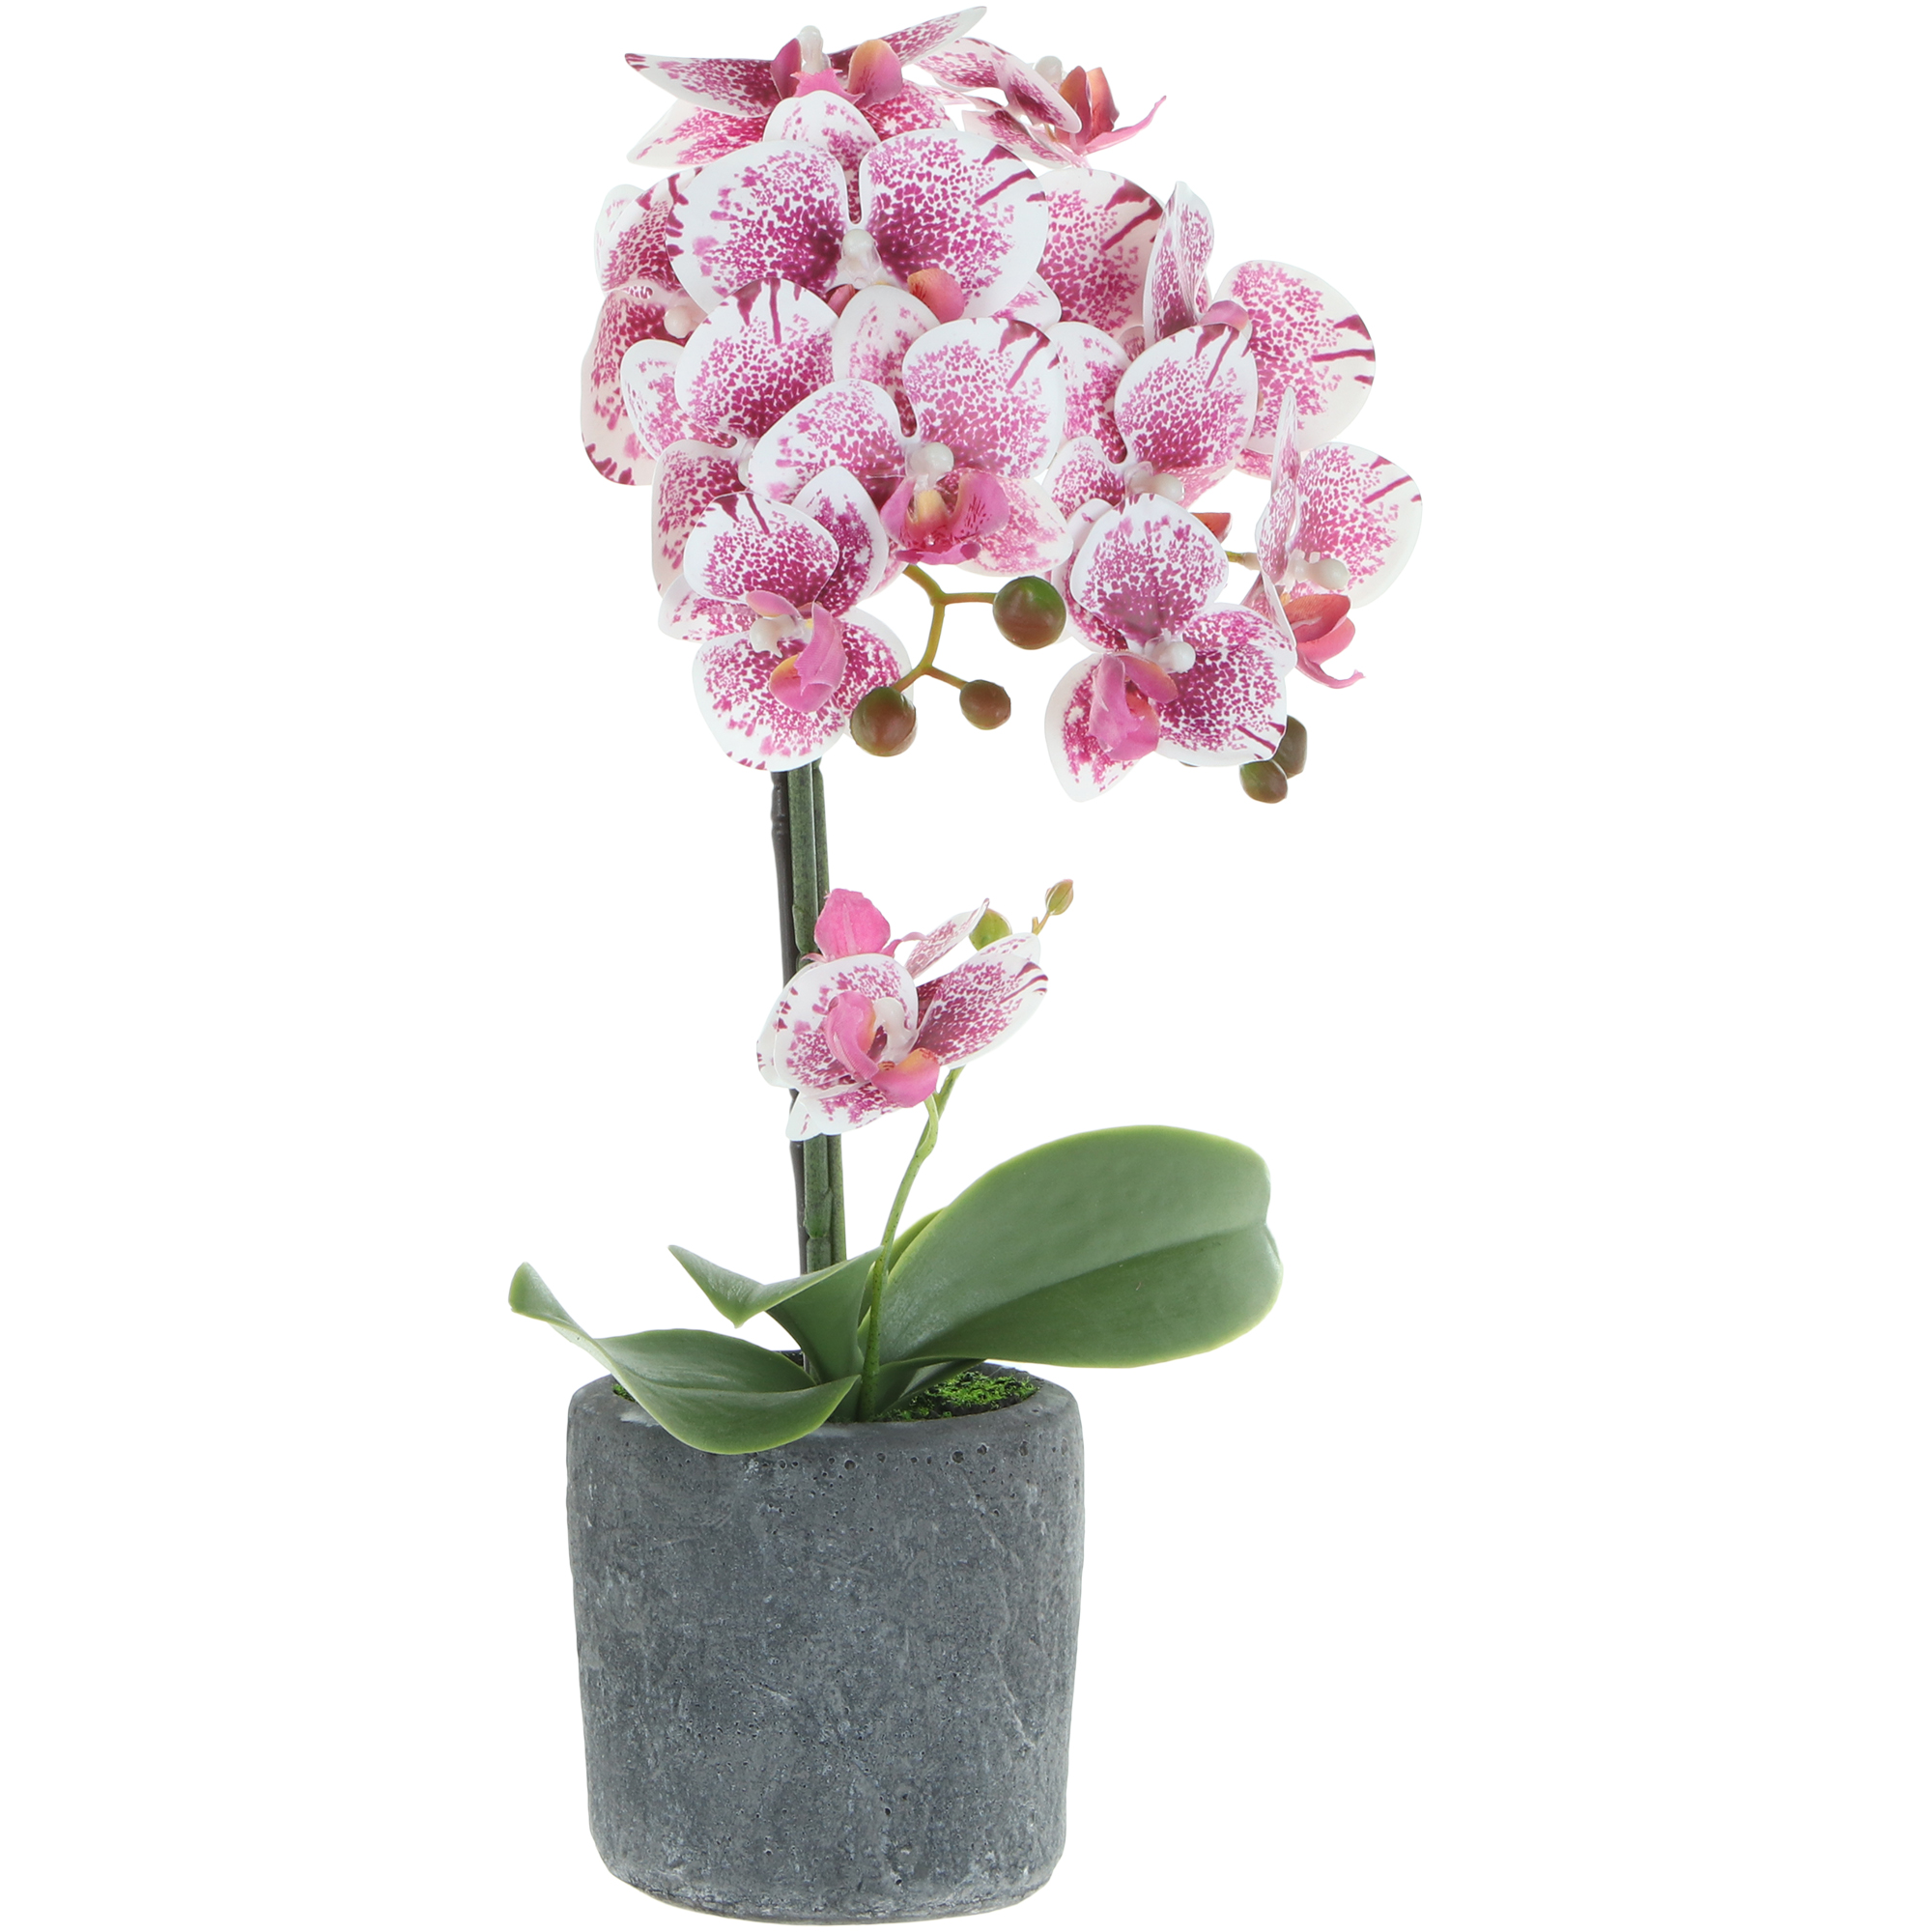 Цветок искусственный в горшке Fuzhou Light орхидея бело-розовая, 3 цвета 42 см цветок искусственный орхидея в горшке 2 цвета 54 см